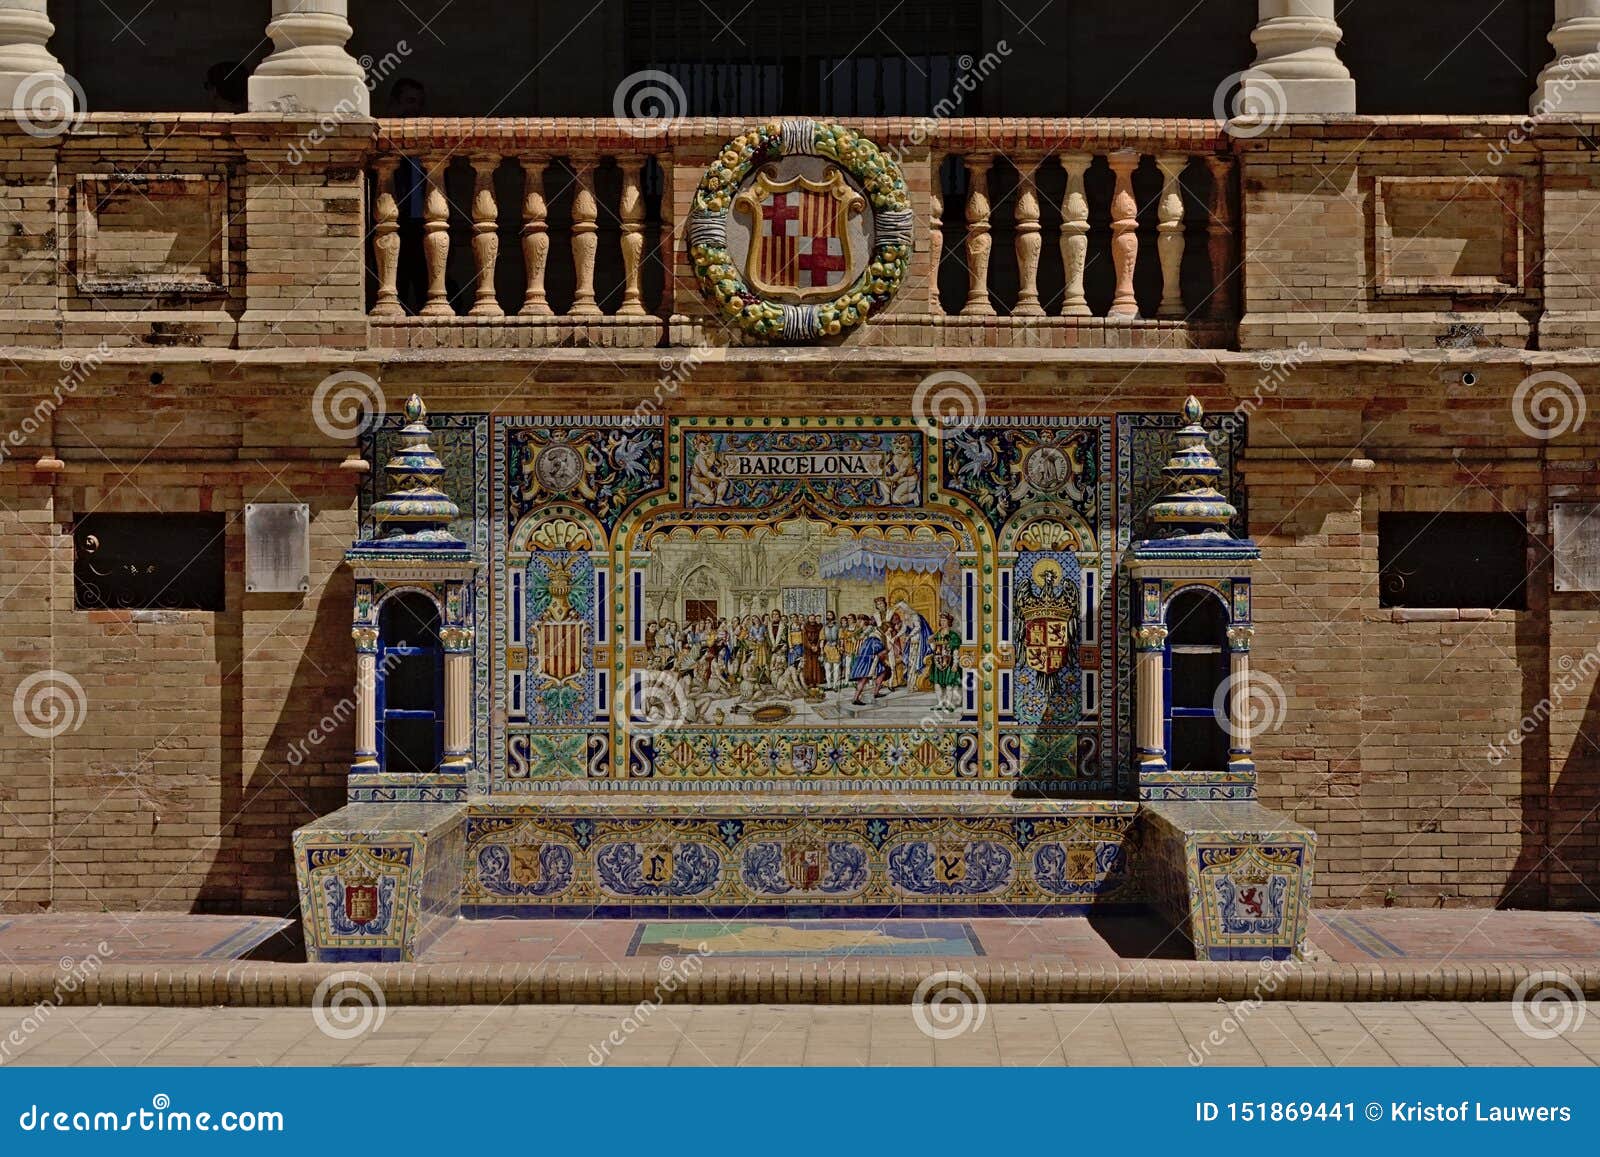 Ha decorato molto il banco in Plaza de Espana, Siviglia. Benchd ecorated con Azuleos che descrive una scena hisstorical a Barcellona